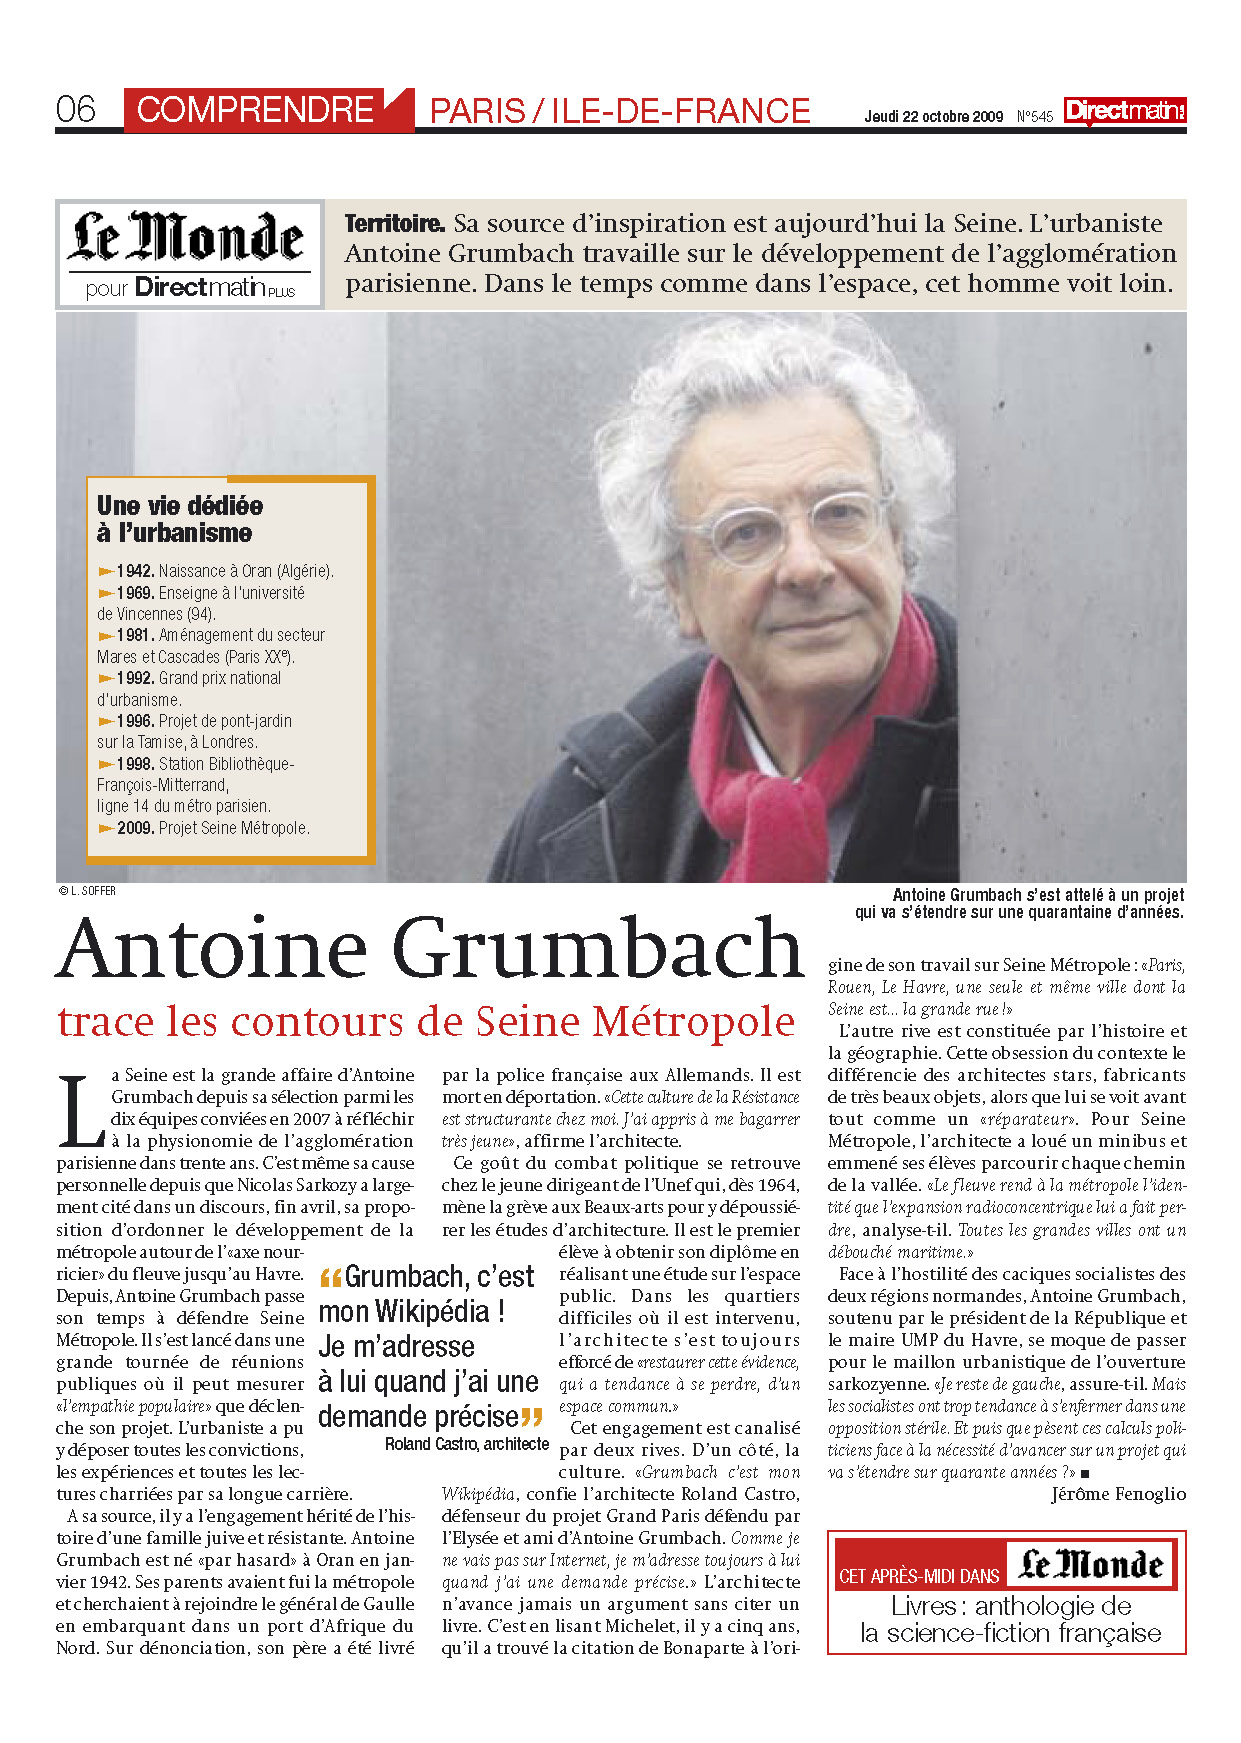 Antoine Grumbach trace les contours de Seine Métropole